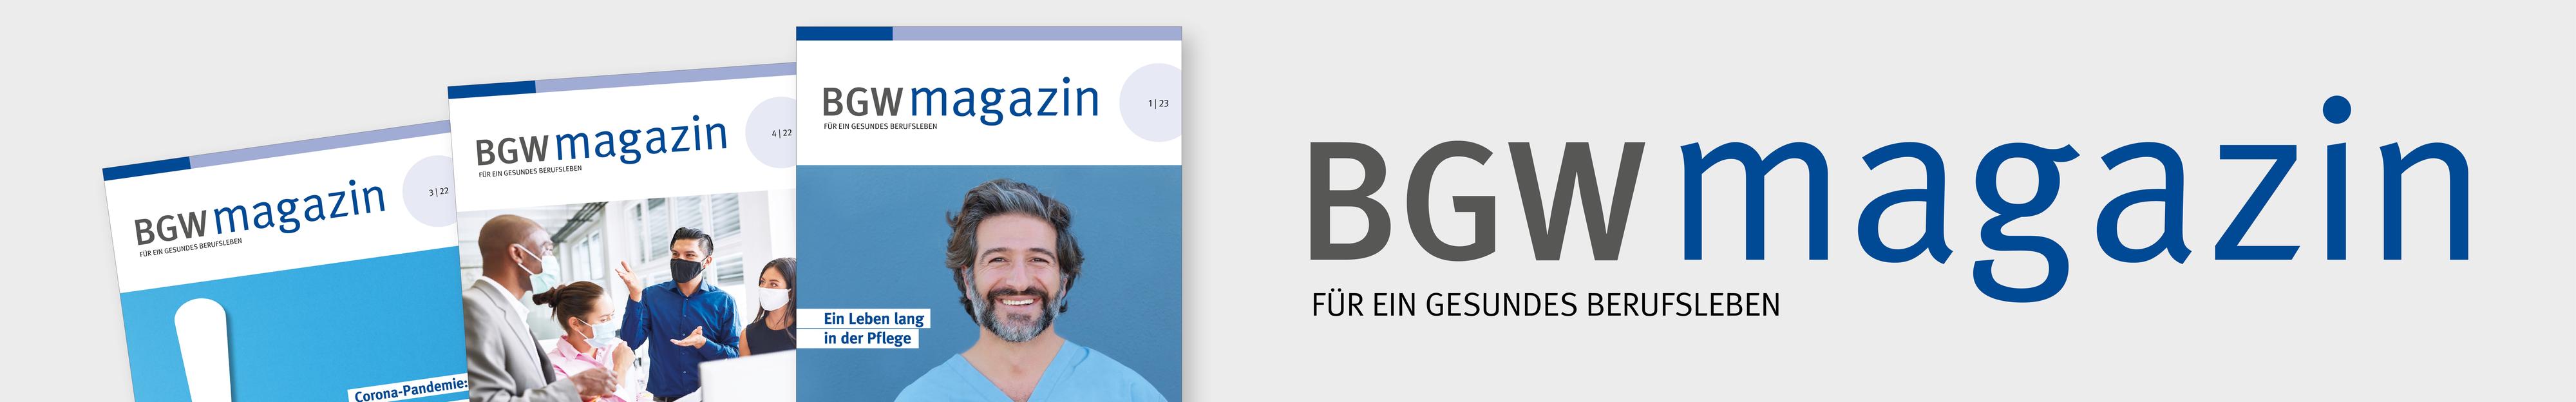 Logo BGW magazin mit Claim "Für ein gesundes Berufsleben" und 3 unterschiedliche Titelseiten